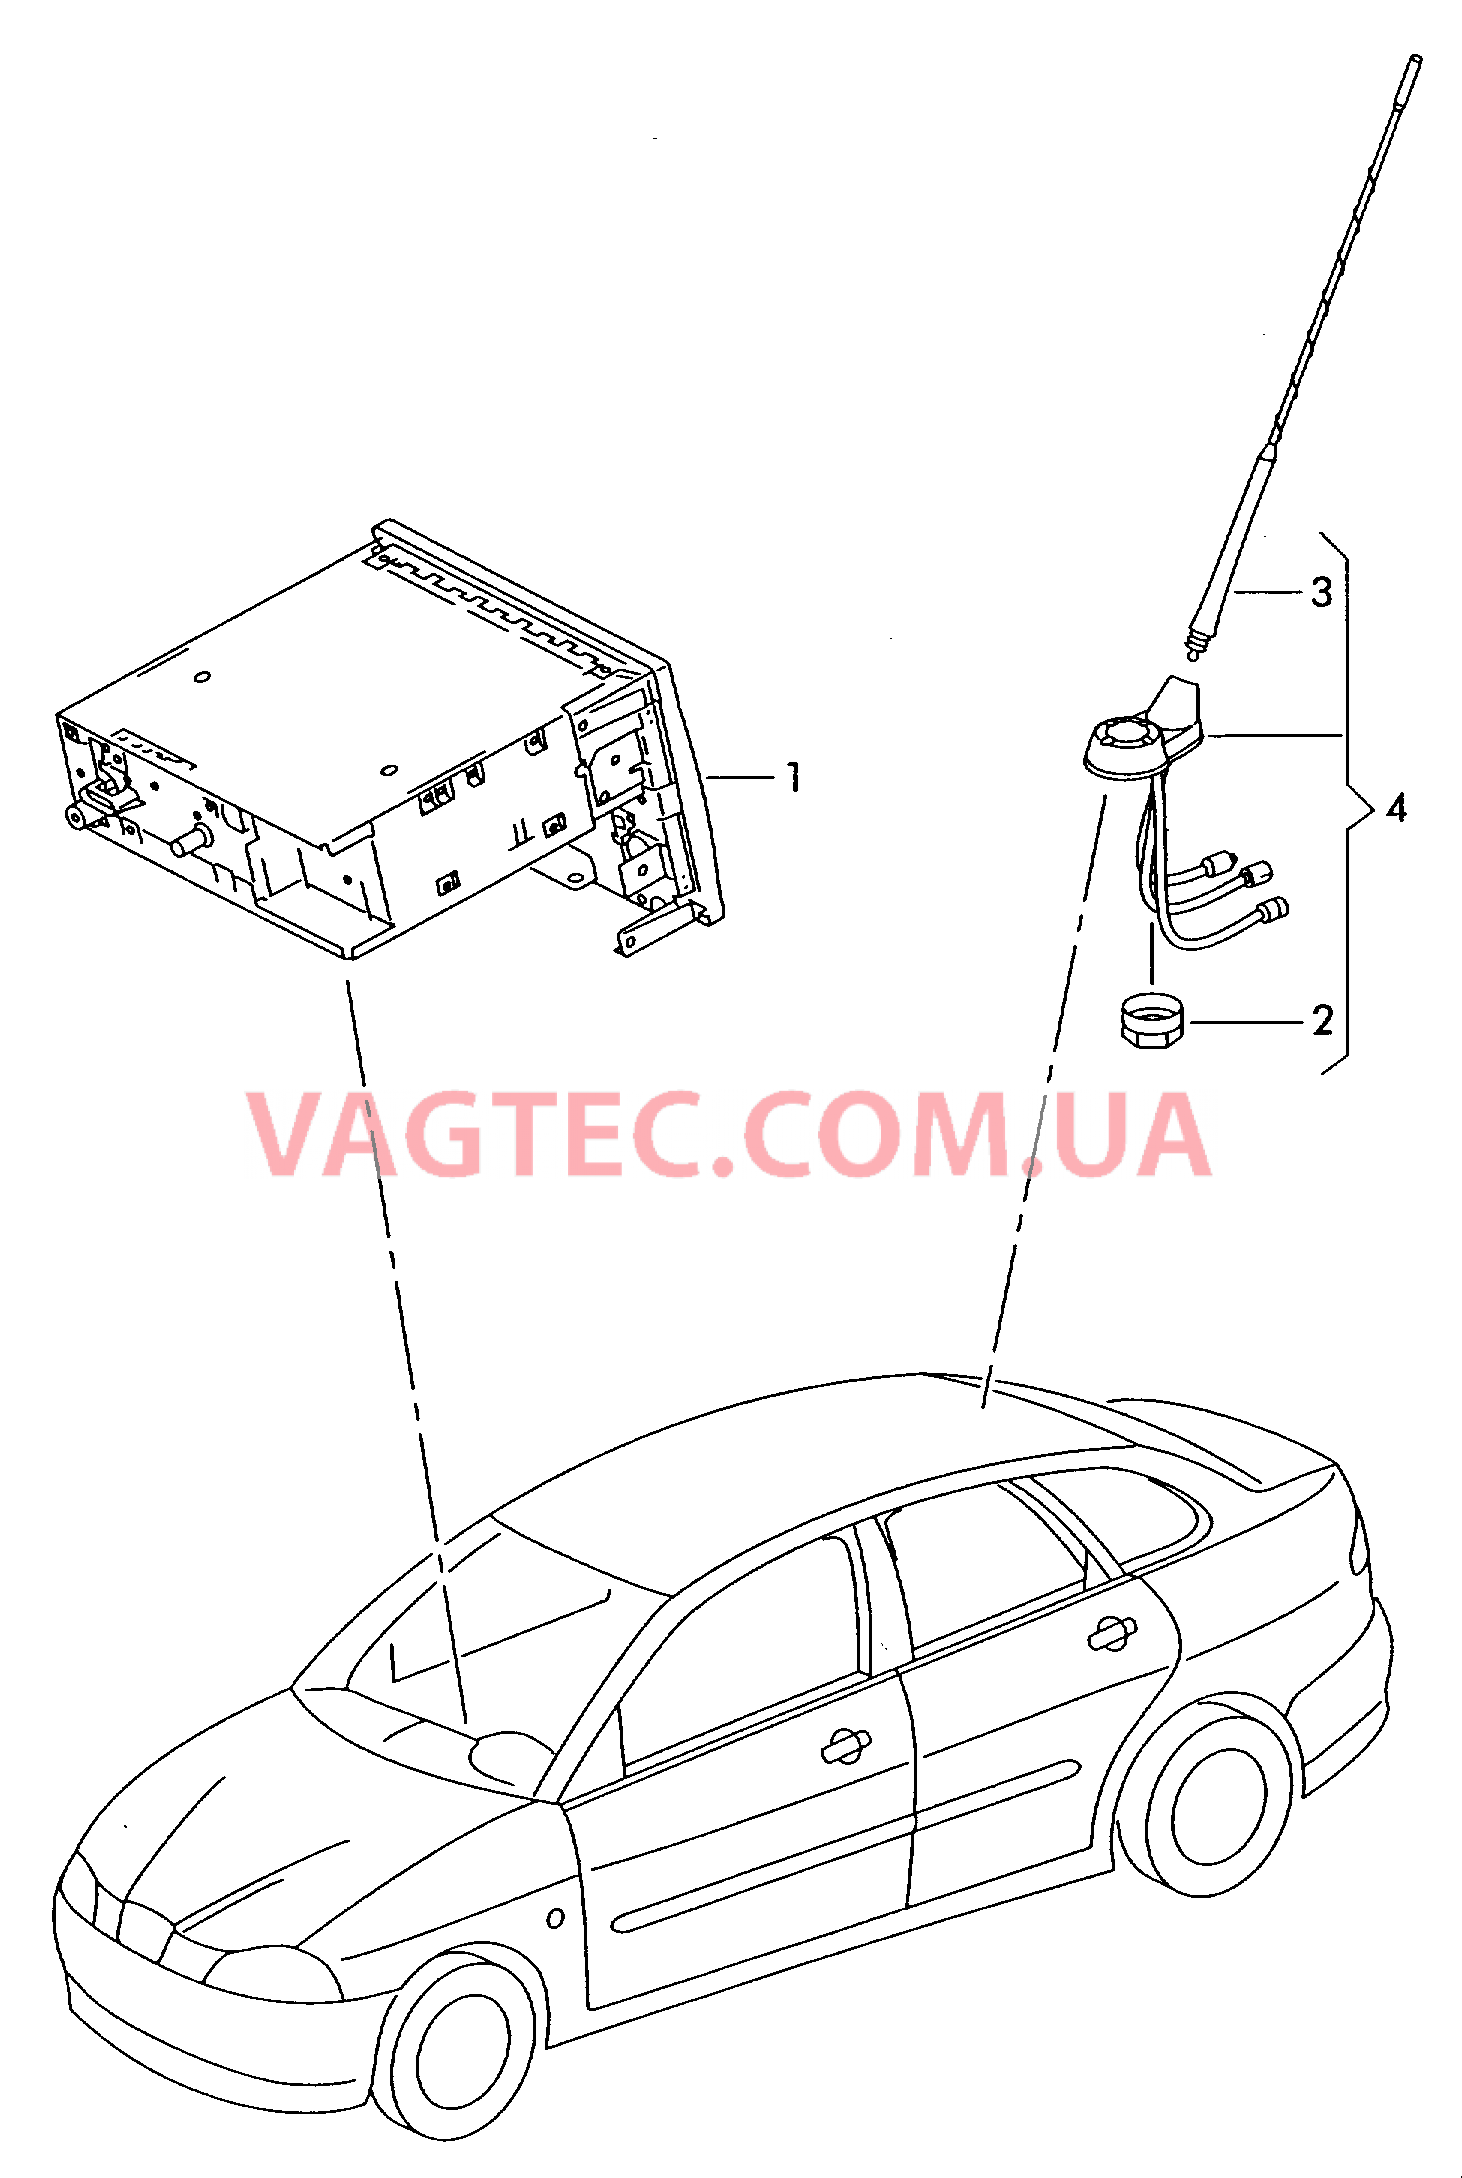 Электрические детали для системы навигации  для SEAT Ibiza 2003